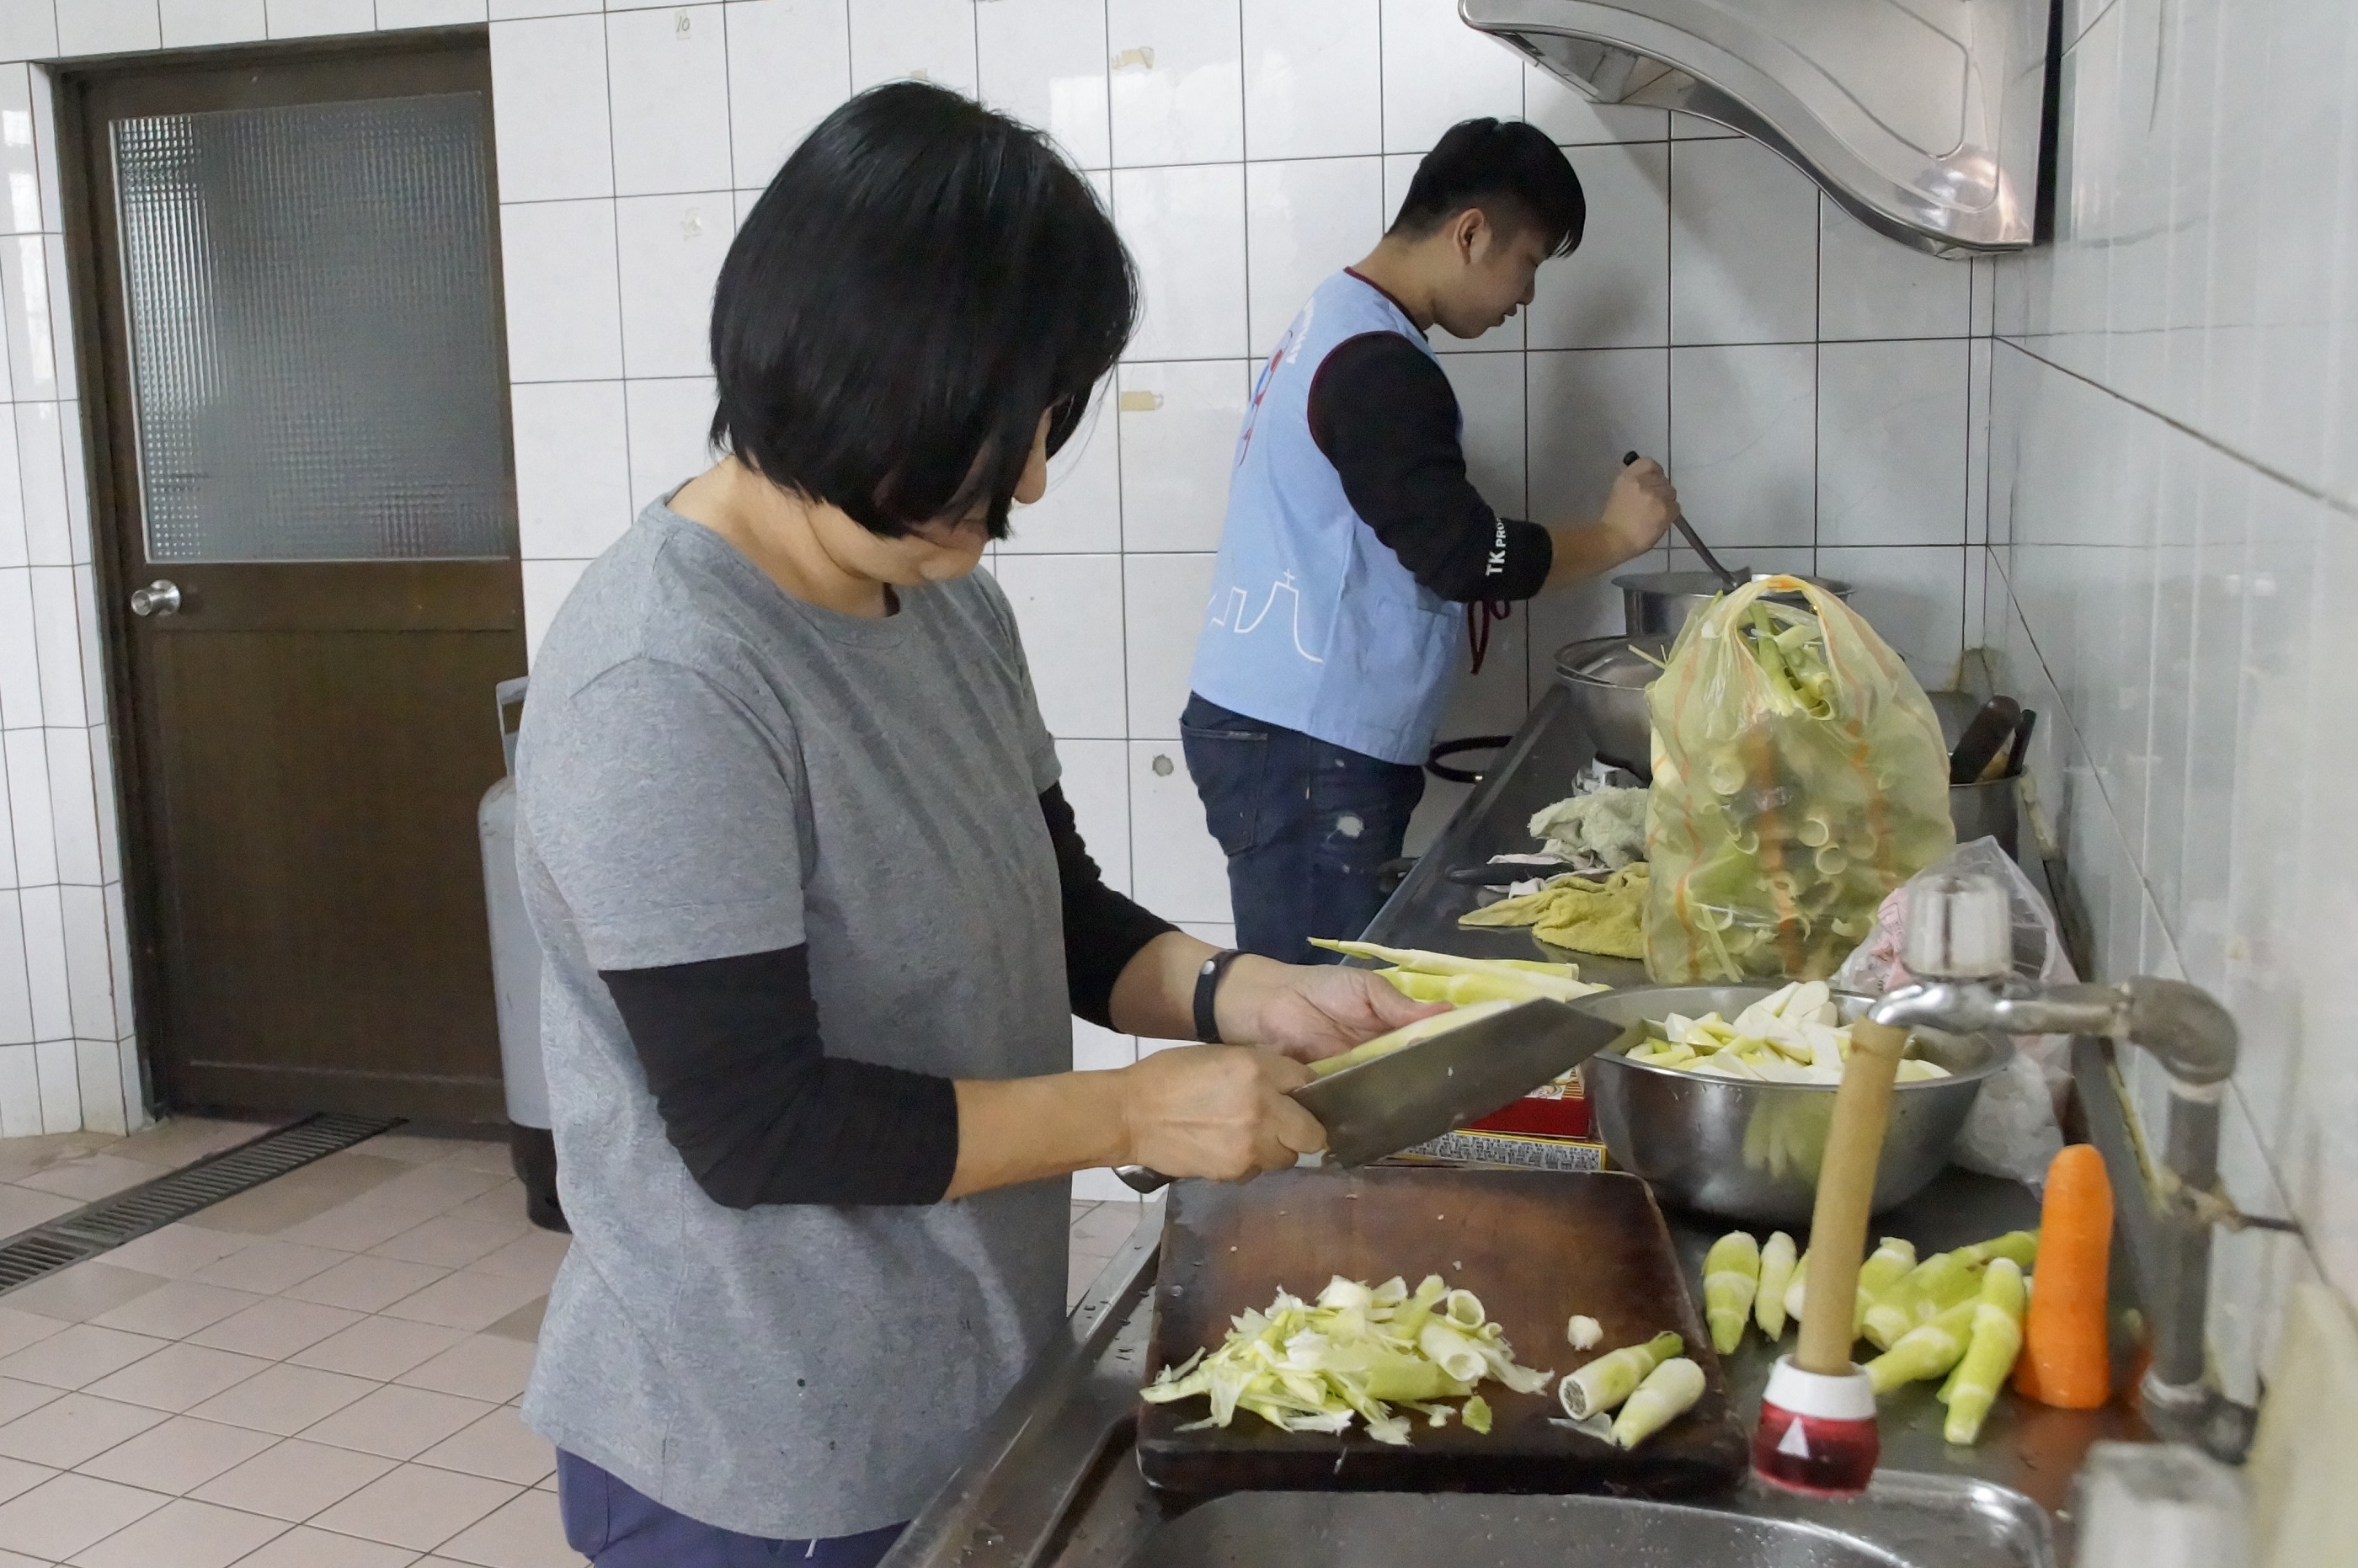 共餐活動的午餐皆由服務學習中心賈大齡主任（左）帶著服務學習學生一起準備食材及烹飪